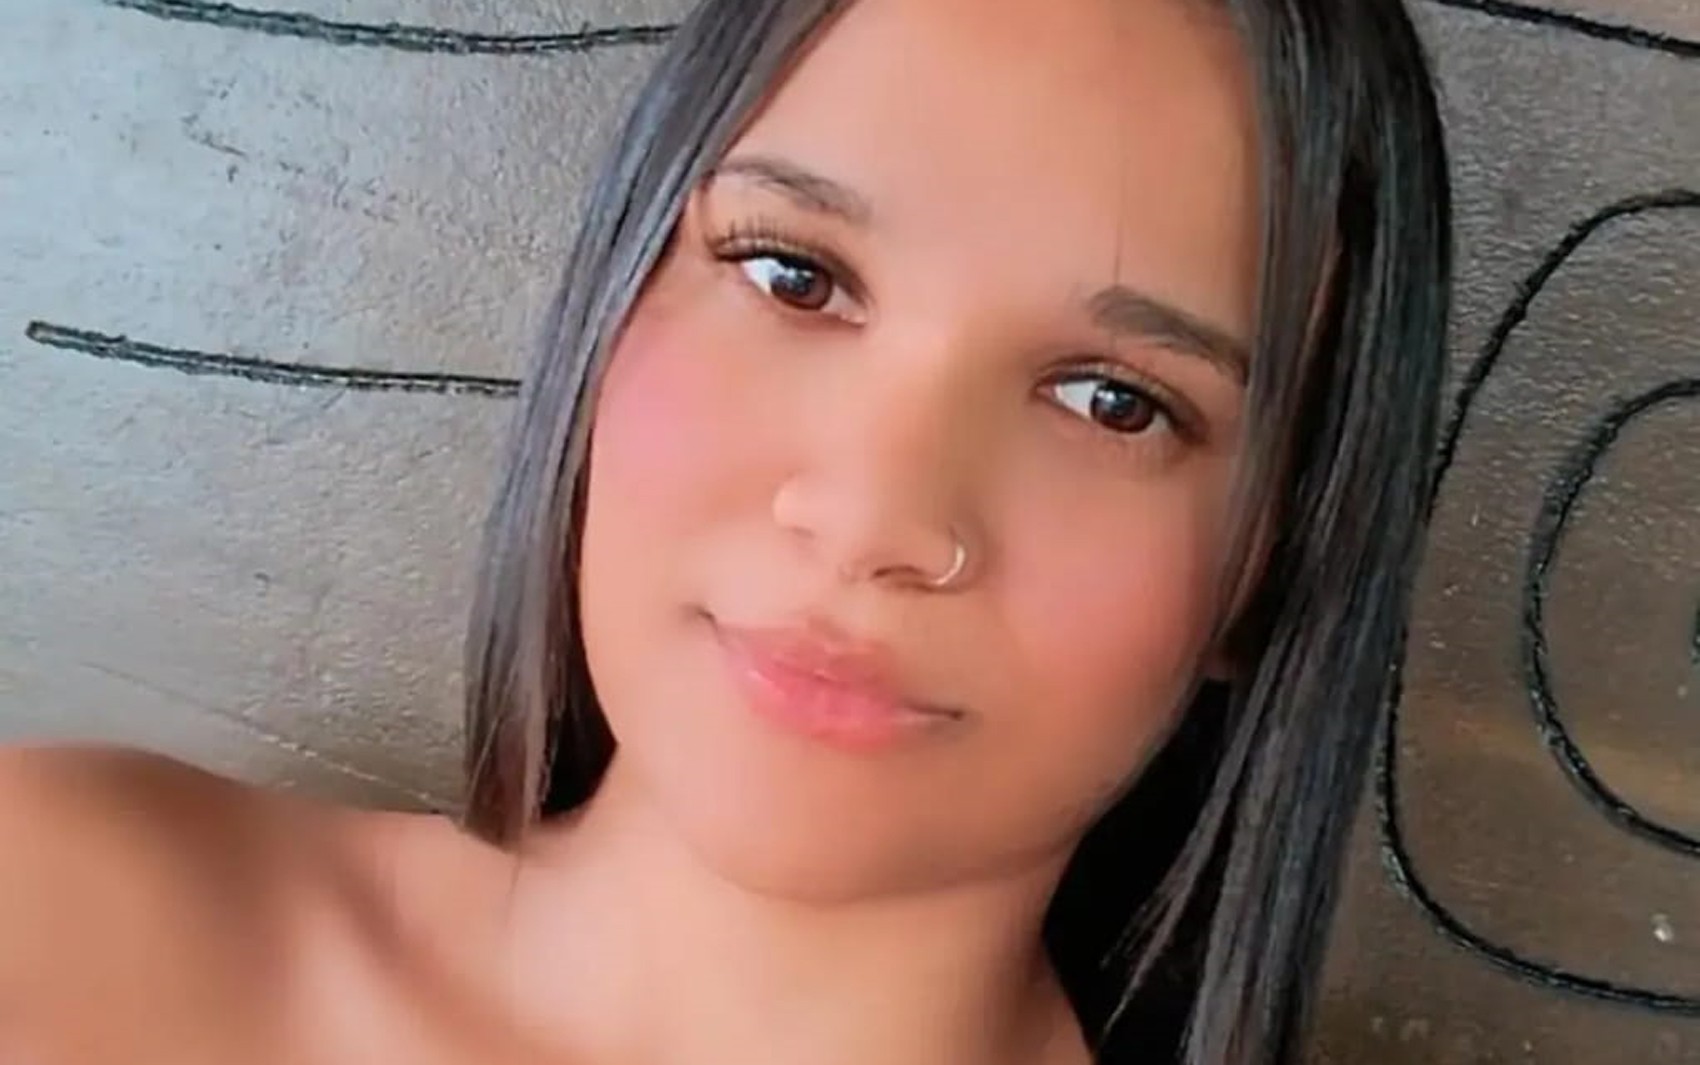 Tiro que matou jovem em casa foi disparado acidentalmente por marido em Ribeirão Preto, diz defesa